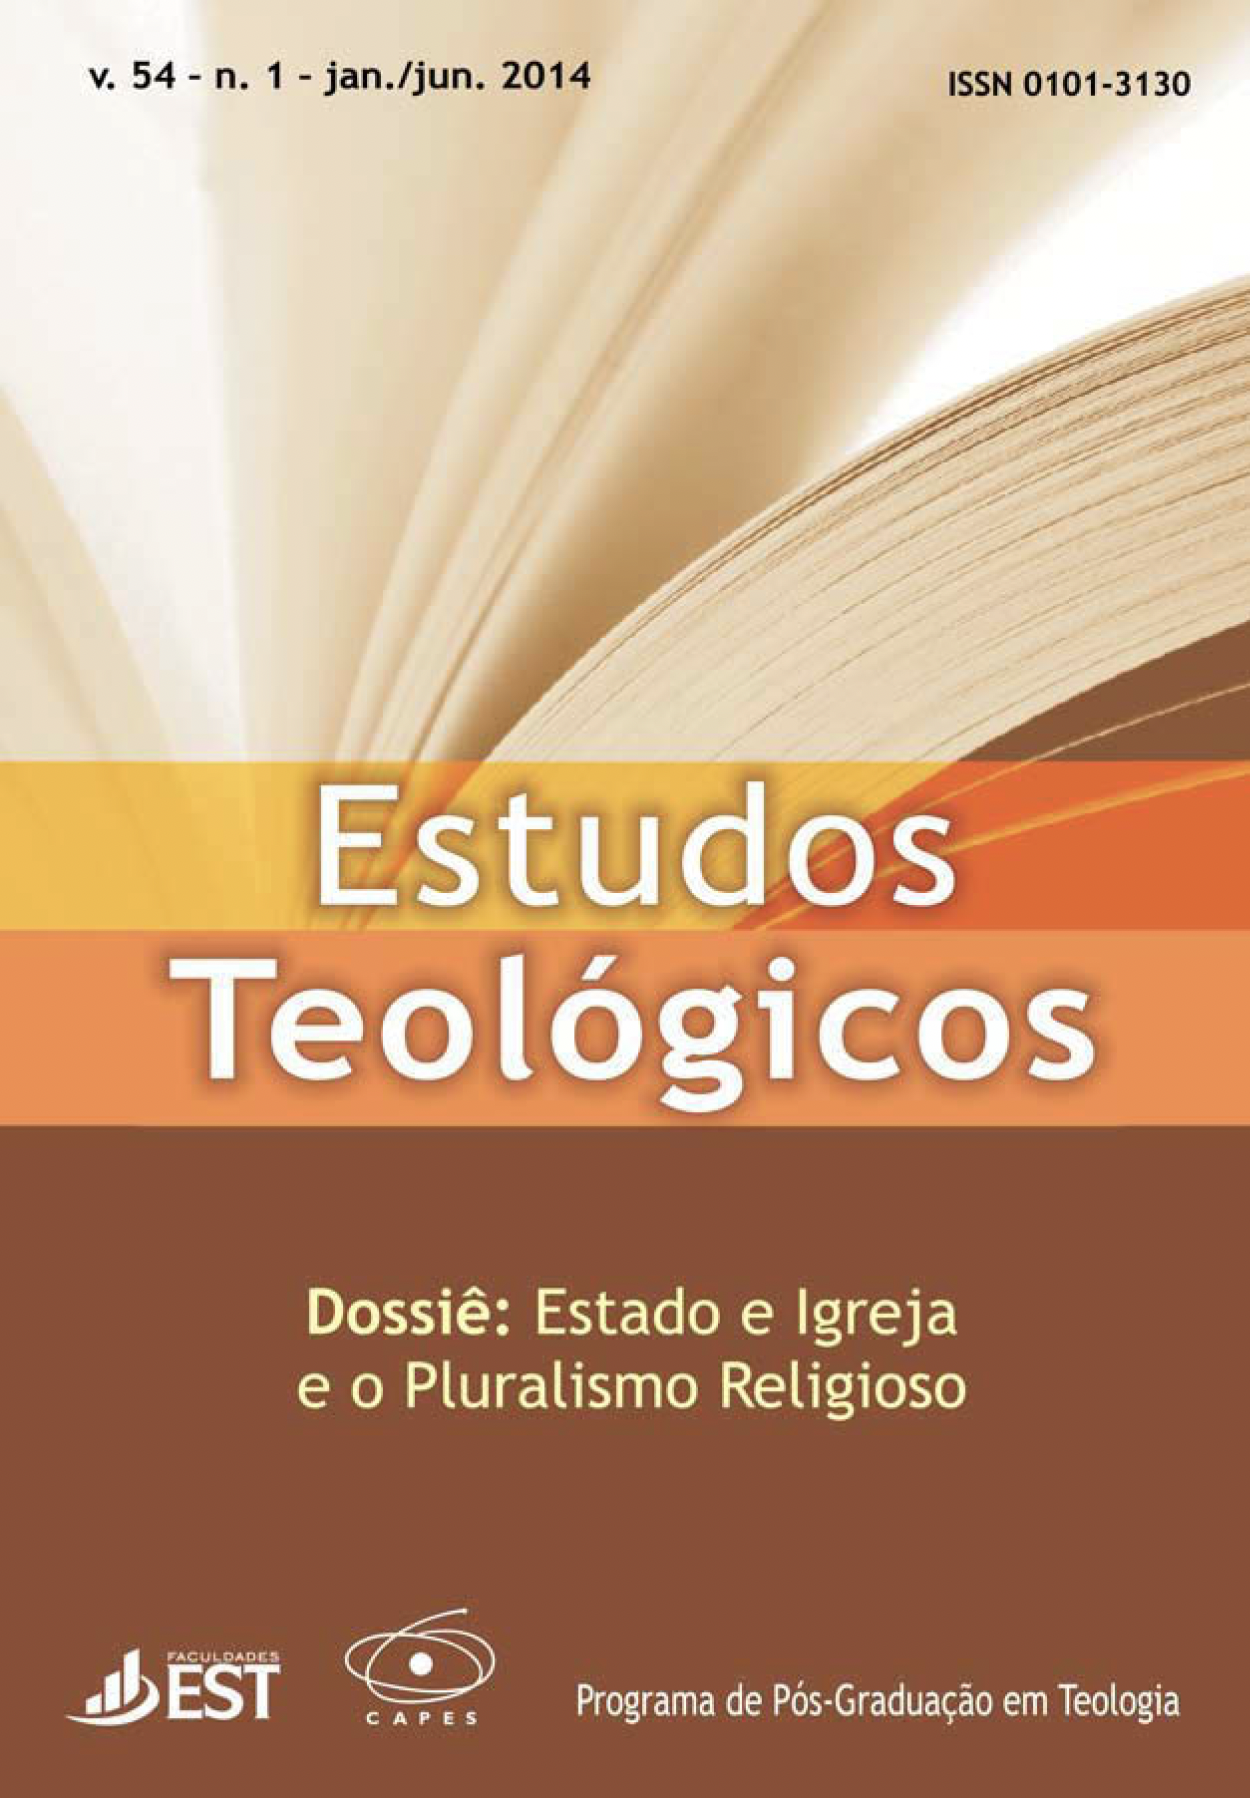 					View Vol. 54 No. 1 (2014): DOSSIÊ: ESTADO E IGREJA E O PLURALISMO RELIGIOSO
				